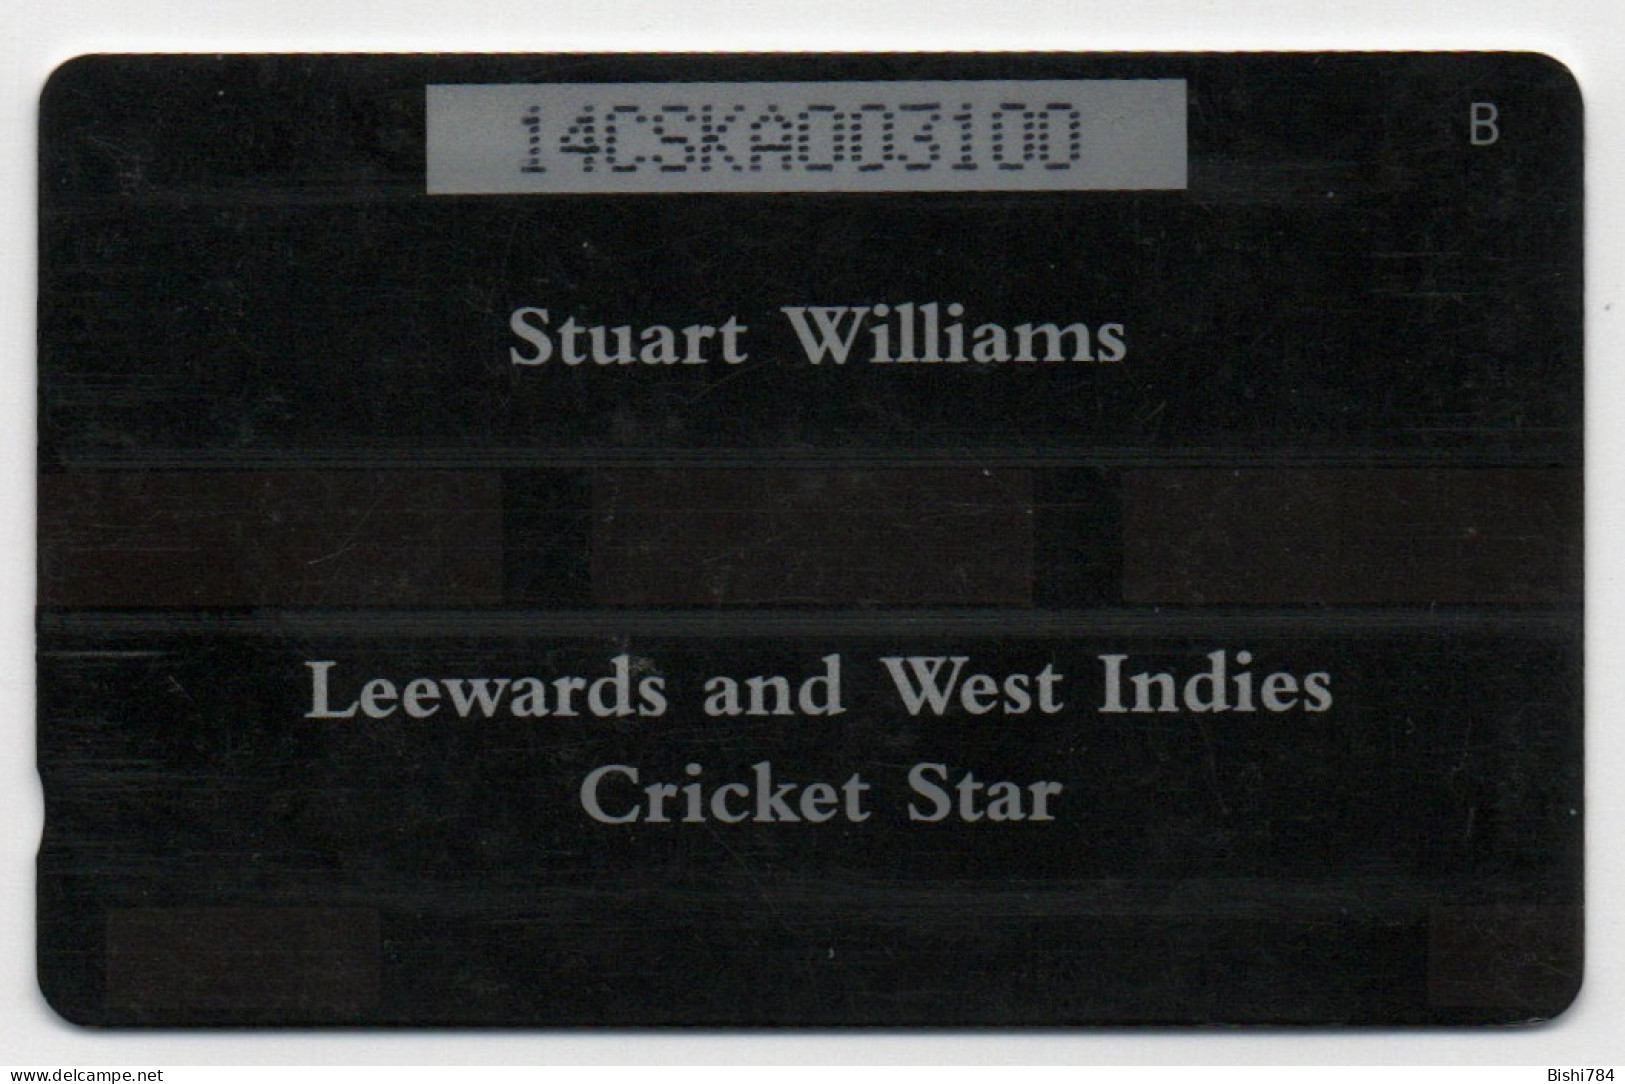 St. Kitts & Nevis - Stuart Williams - 14CSKA - St. Kitts & Nevis